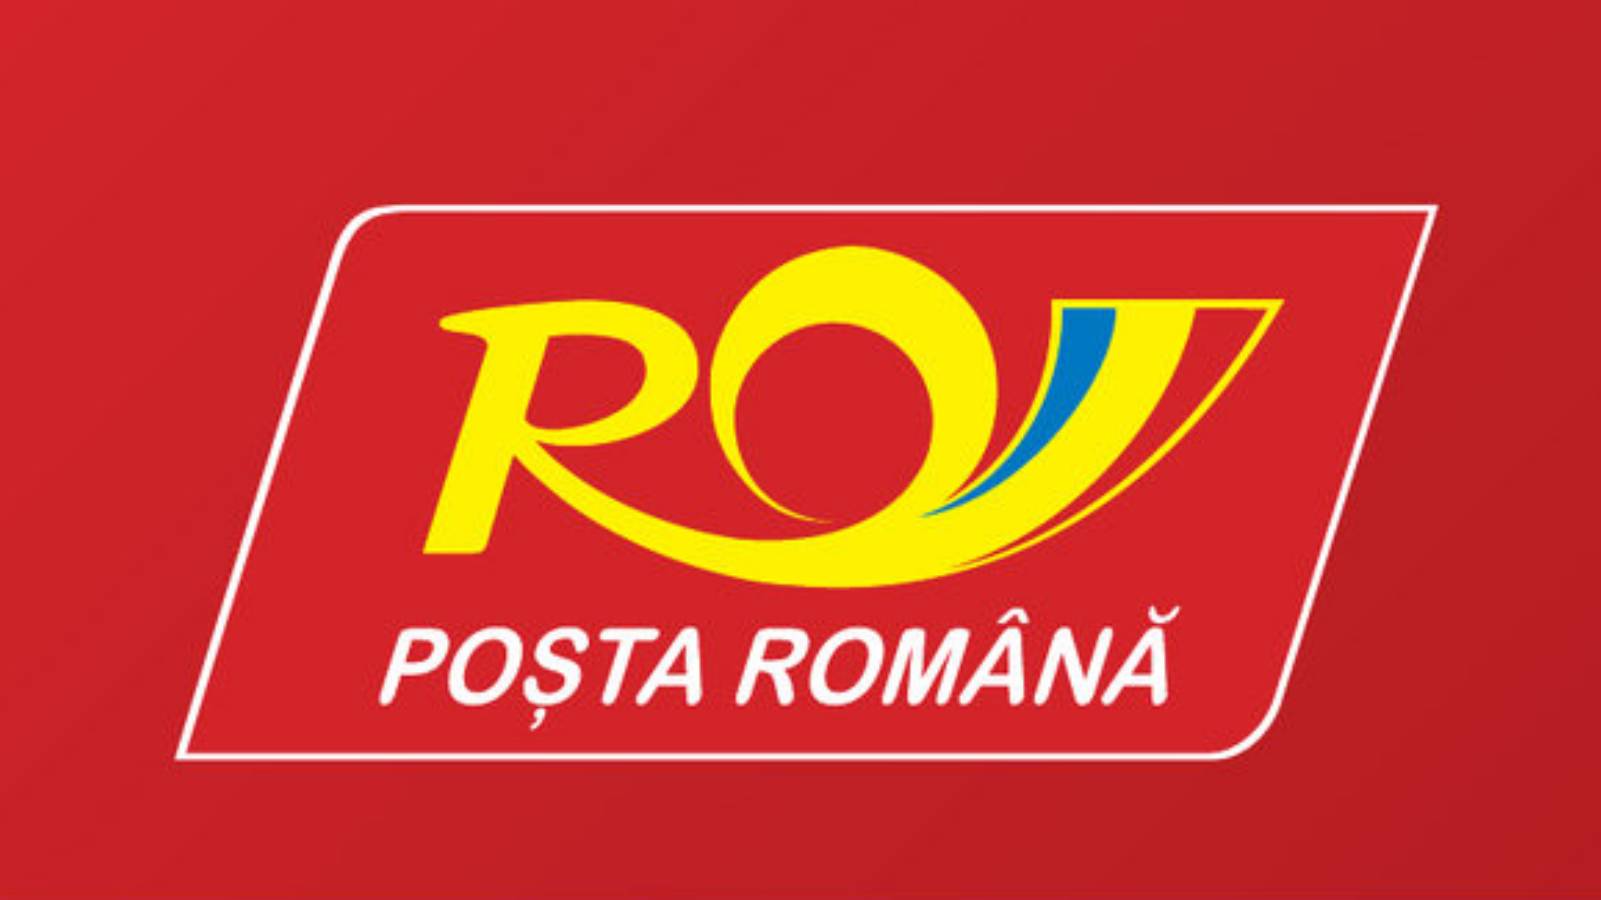 envois par courrier électronique de la poste roumaine